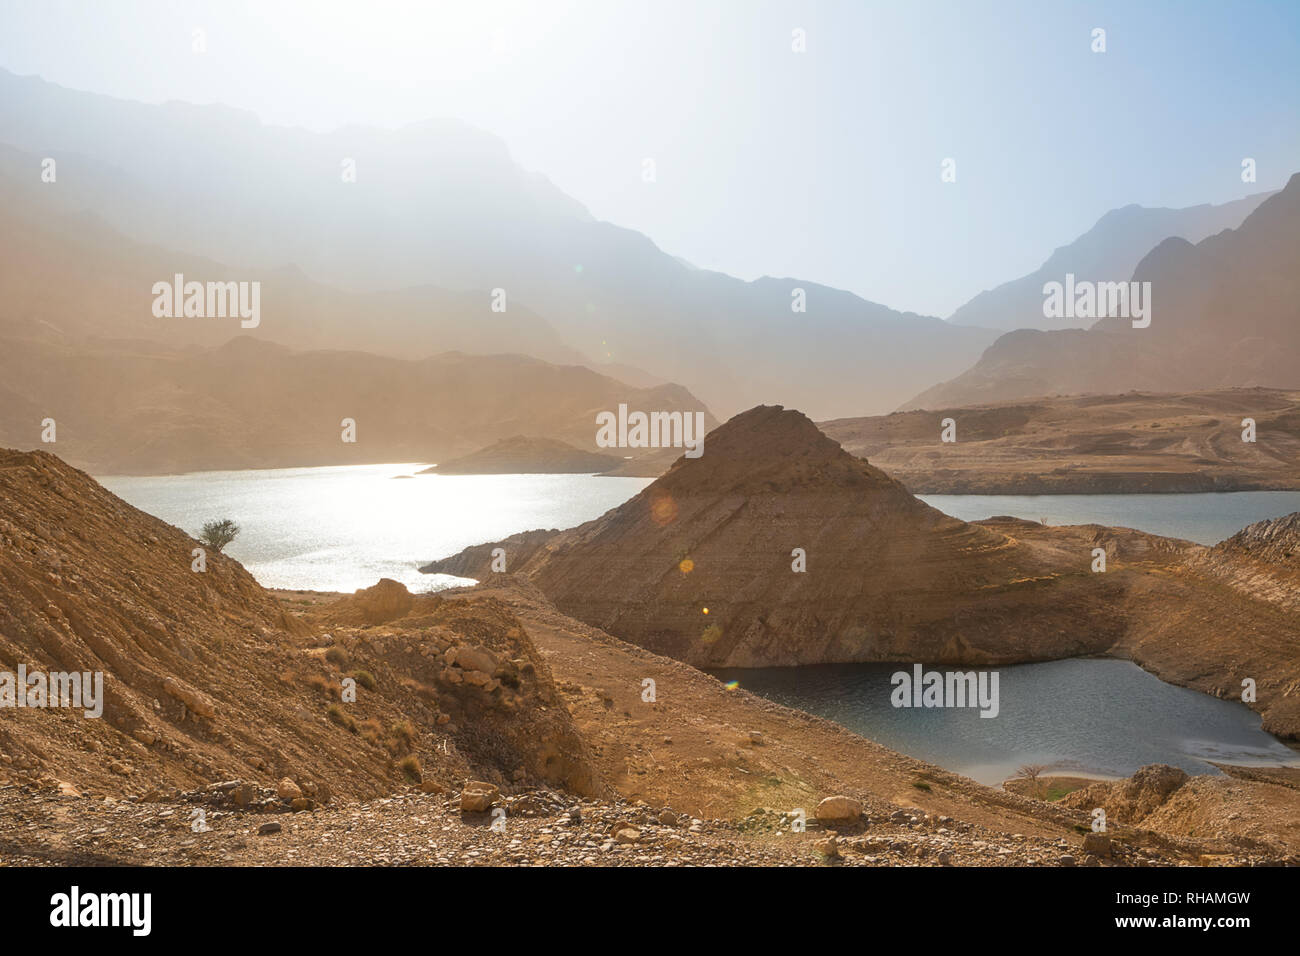 Lake of Wadi Dayqah Dam (Oman) Stock Photo